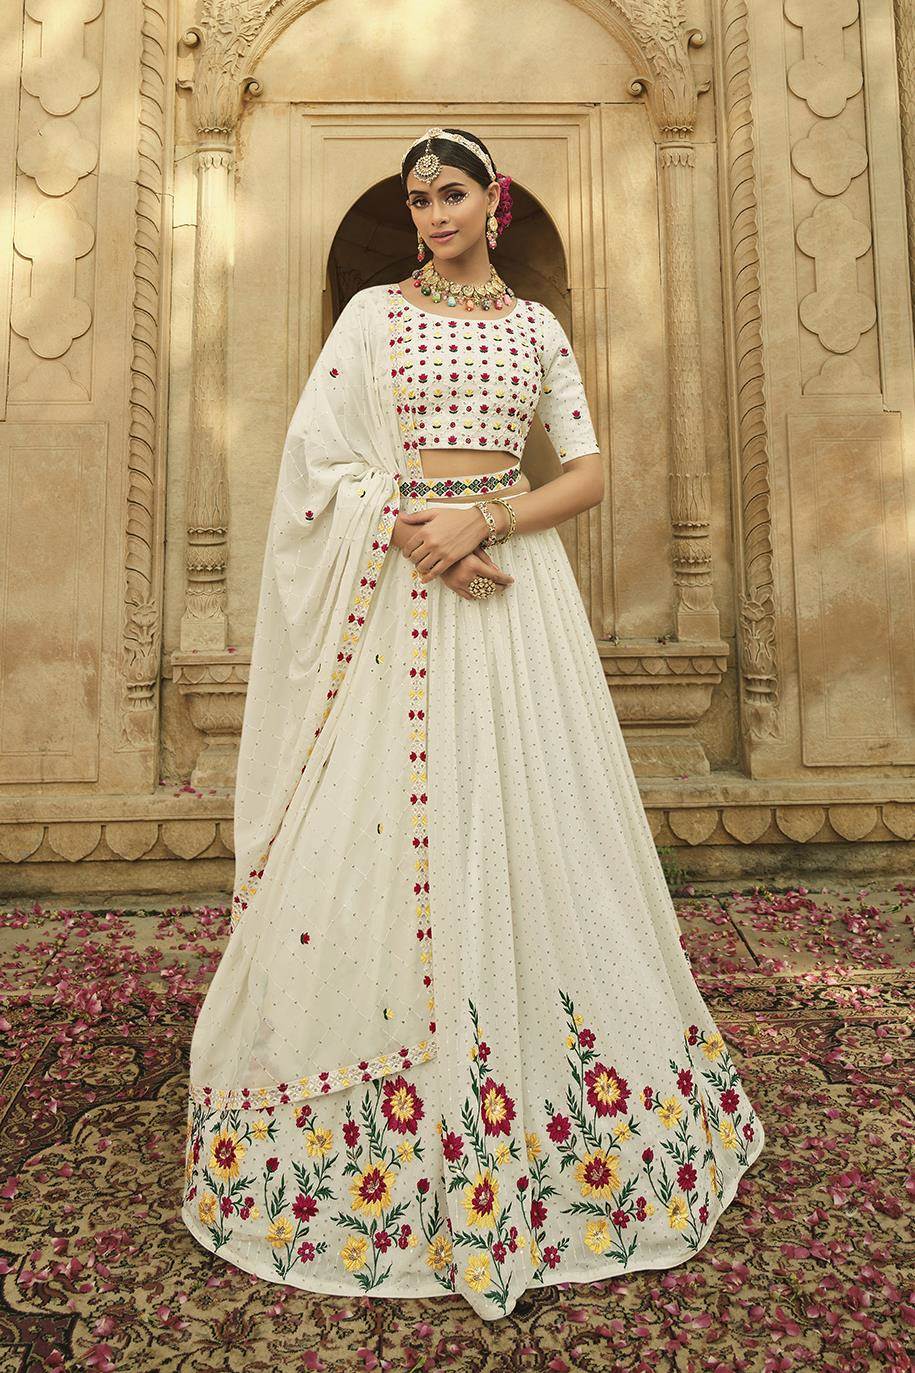 Fully Stitched Lehenga Choli | Bridal Lehenga Choli Pinterest